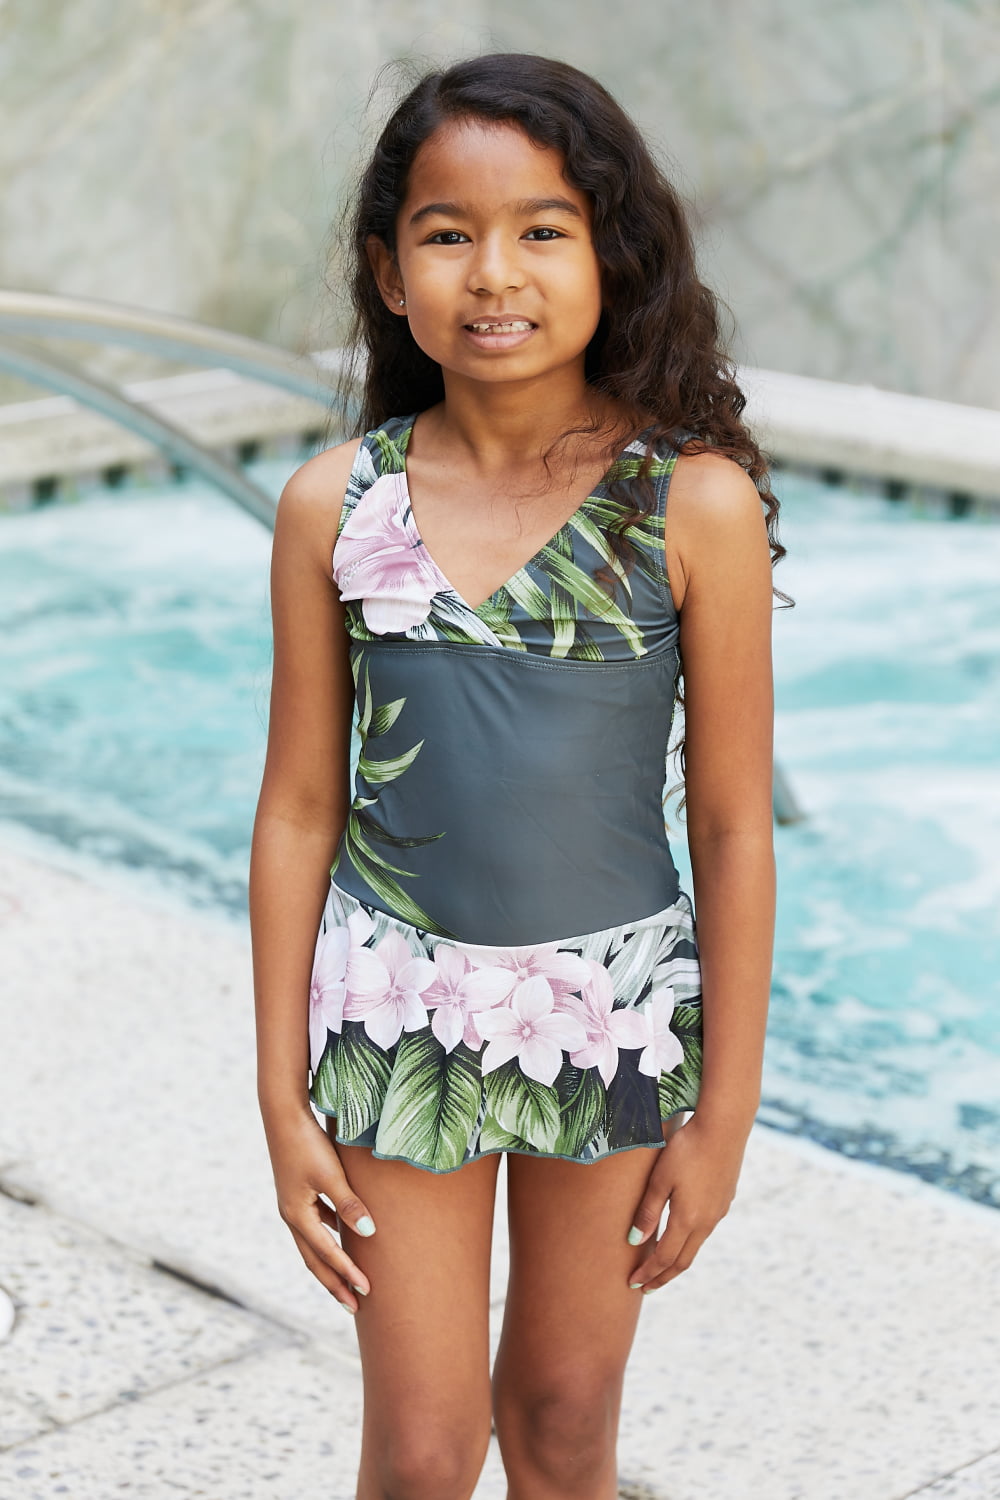 Hazel Blues® |  Marina West Swim Clear Waters Swim Dress in Aloha Forest: Youth